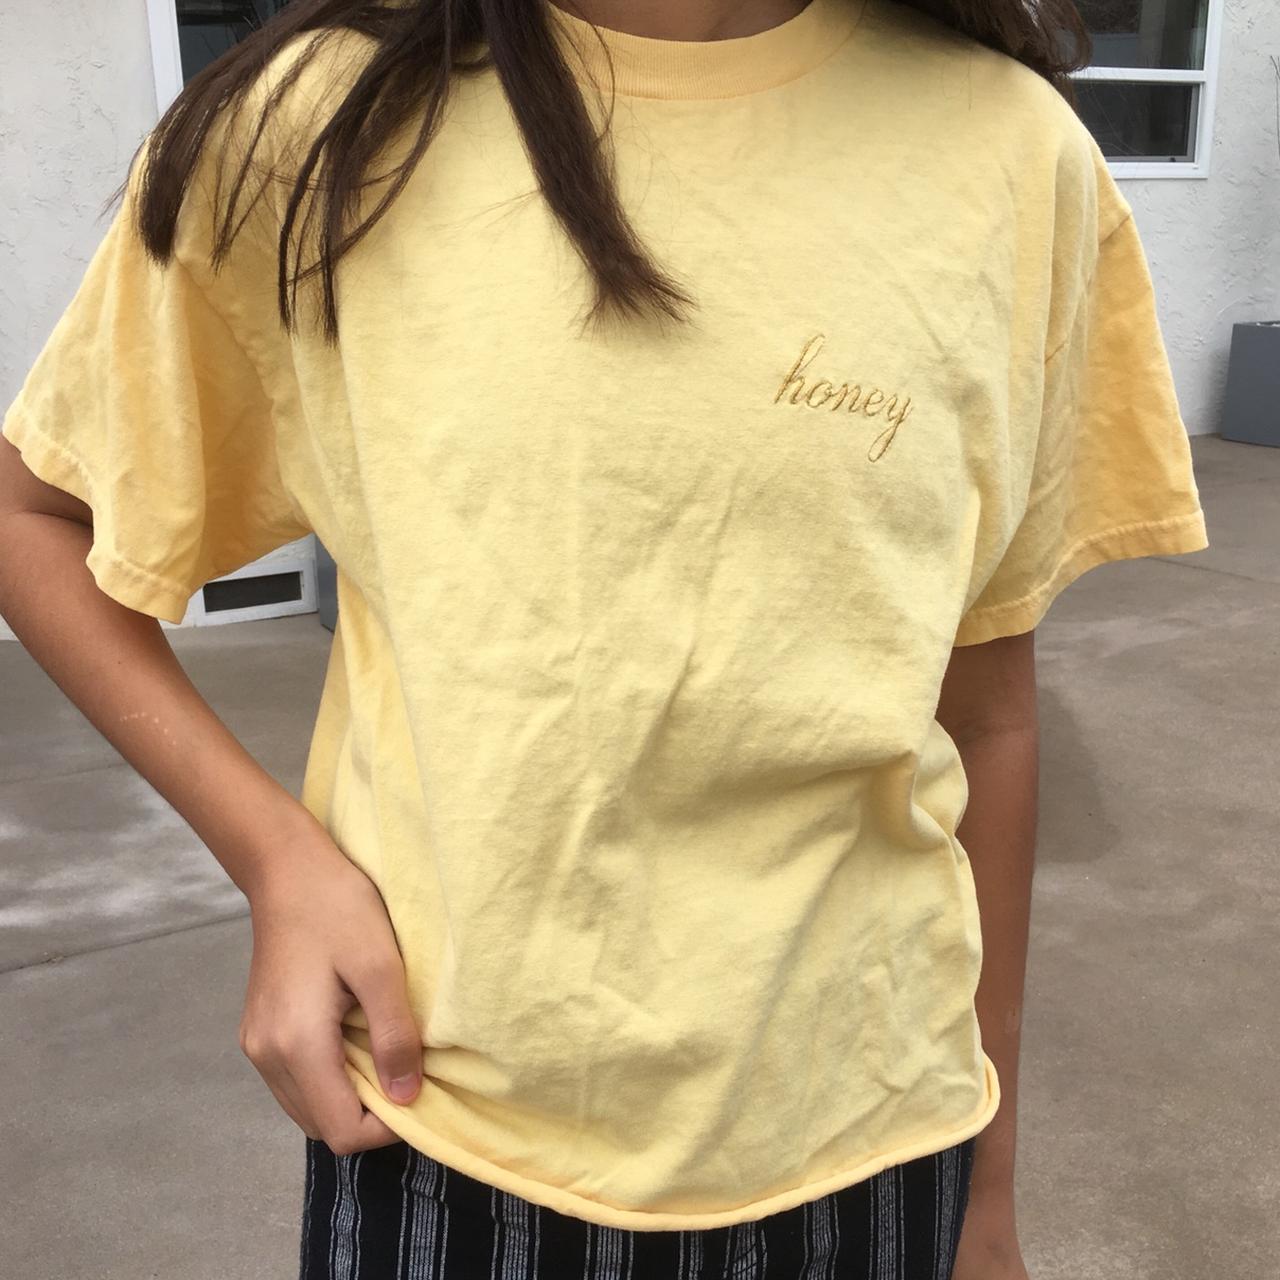 Brandy Melville Honey T-Shirt - One Size. Such a - Depop